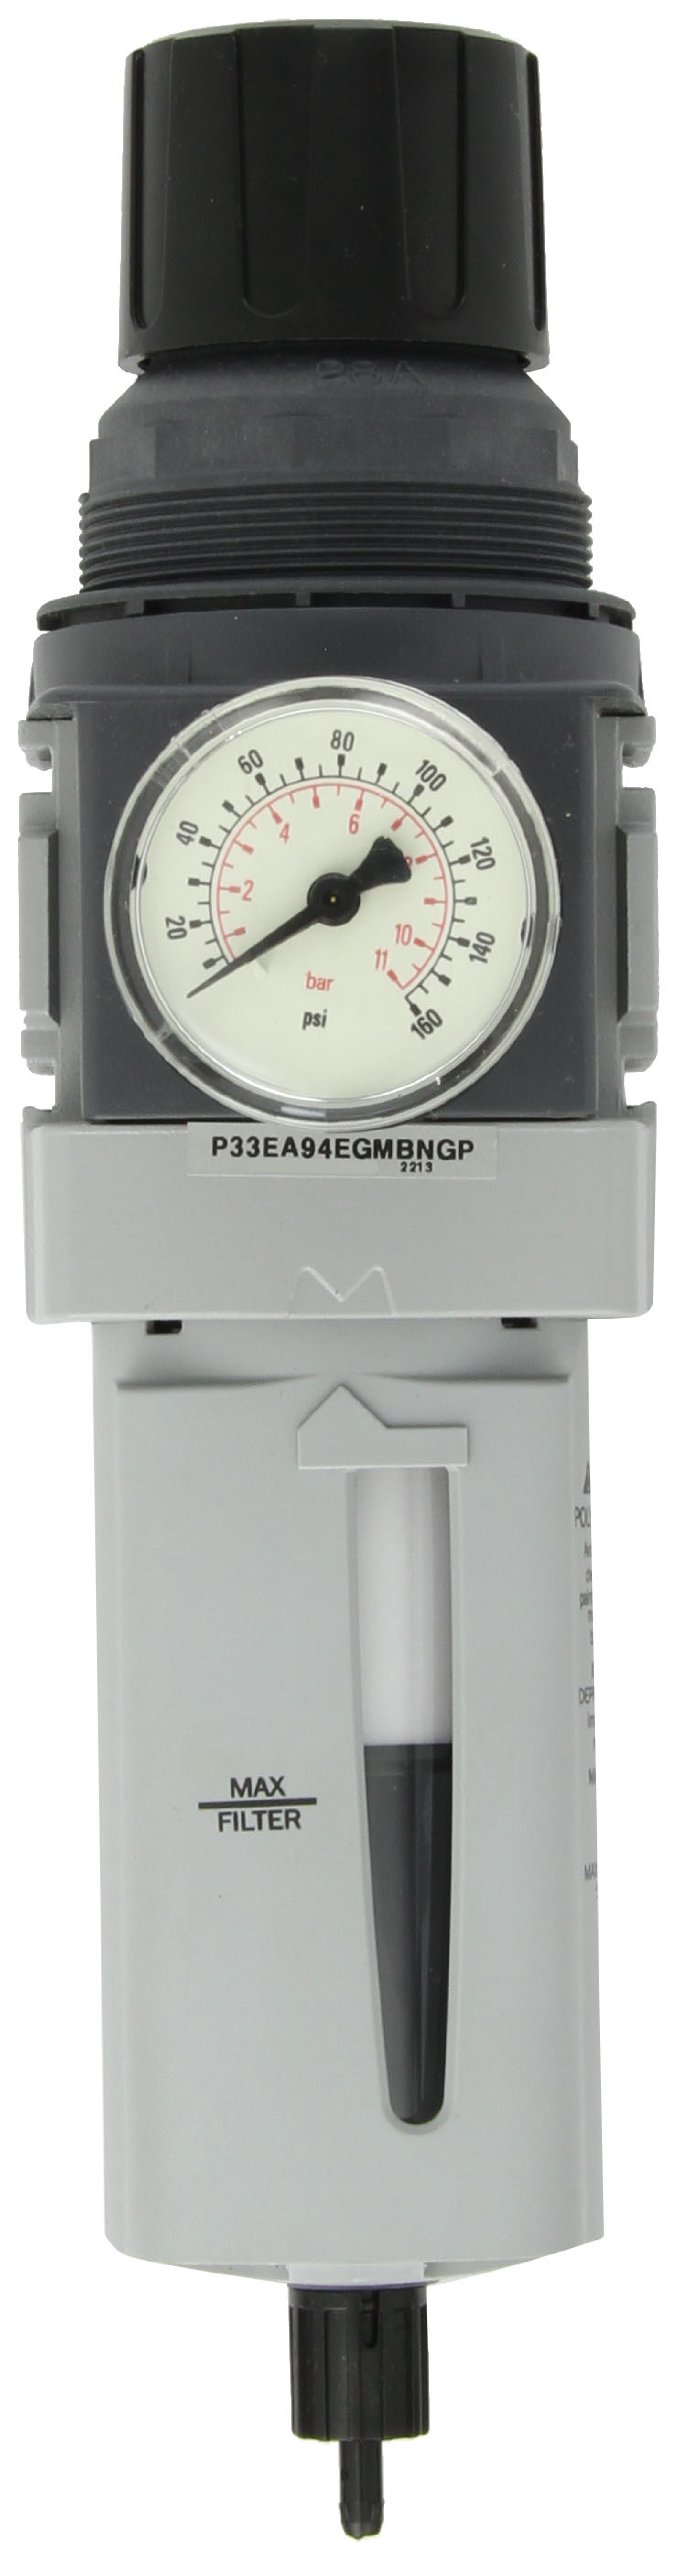 Parker P33EA94EGMBNGP Regulator pressure